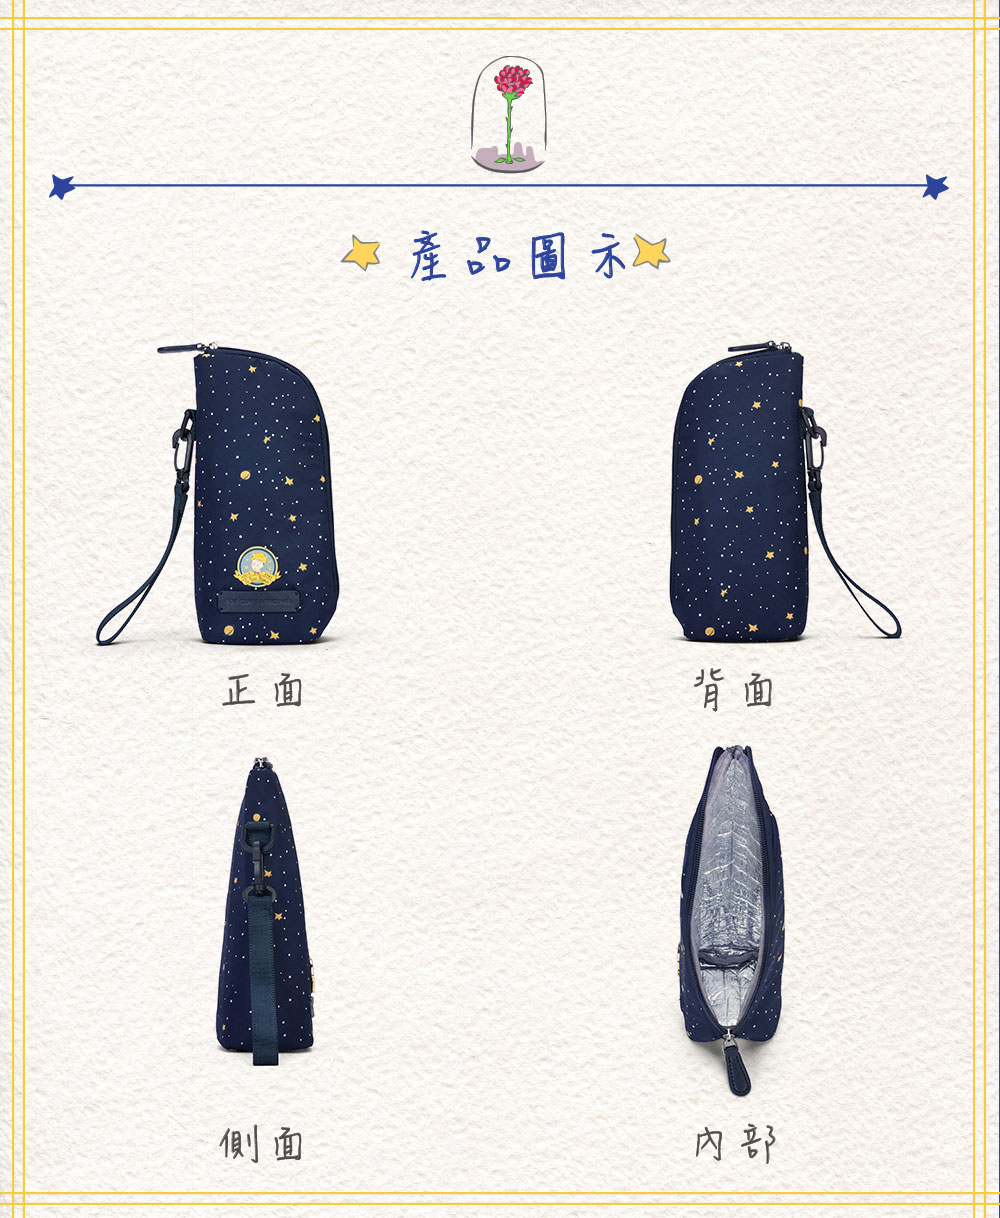 【小王子Le Petit Prince聯名款】閃耀星空親子系列 多用途萬用袋-星空藍 FXG224-98